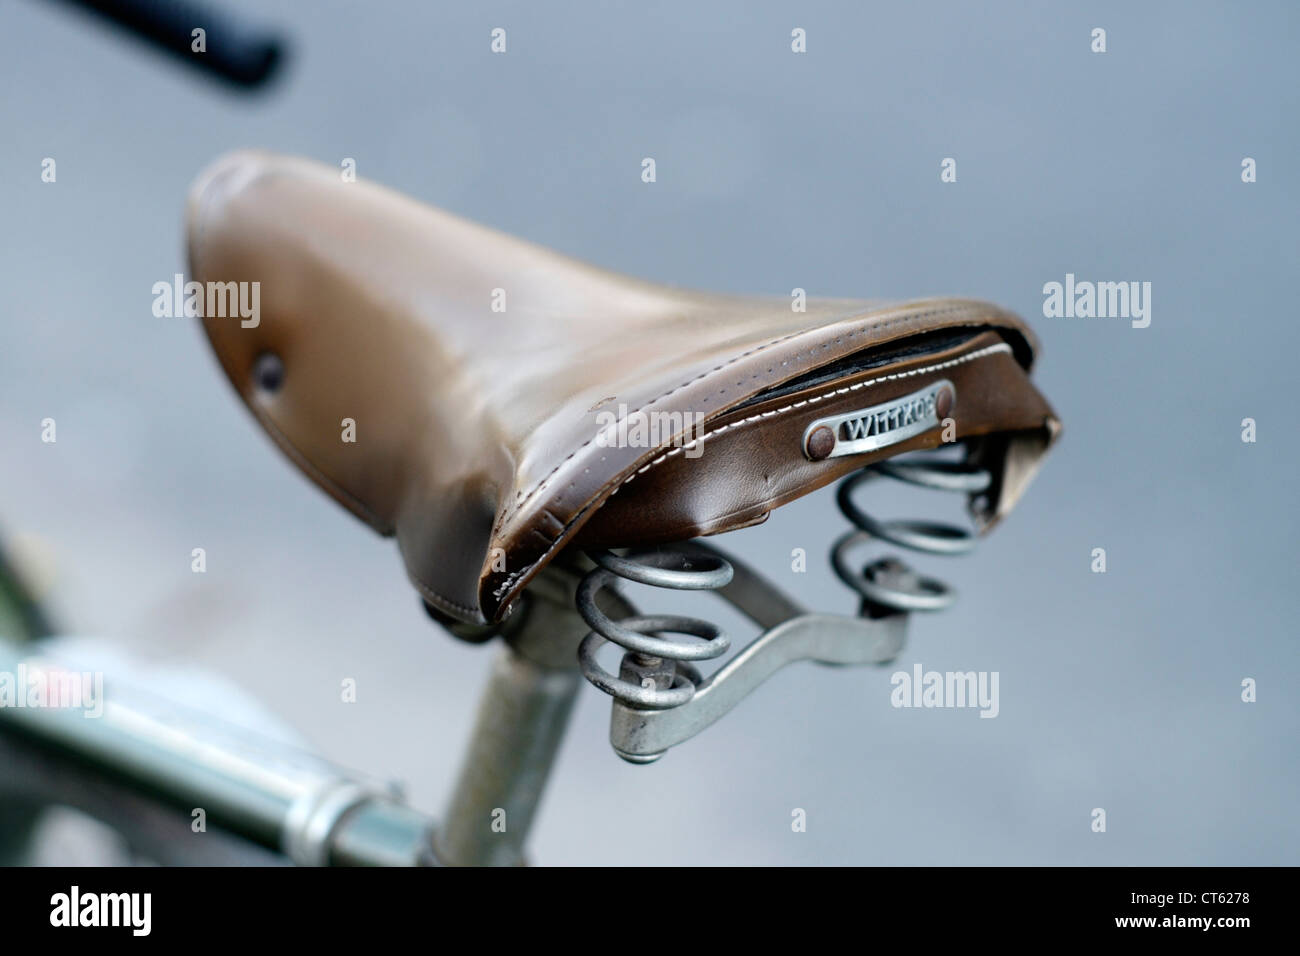 Retro style bicycle saddle Stock Photo